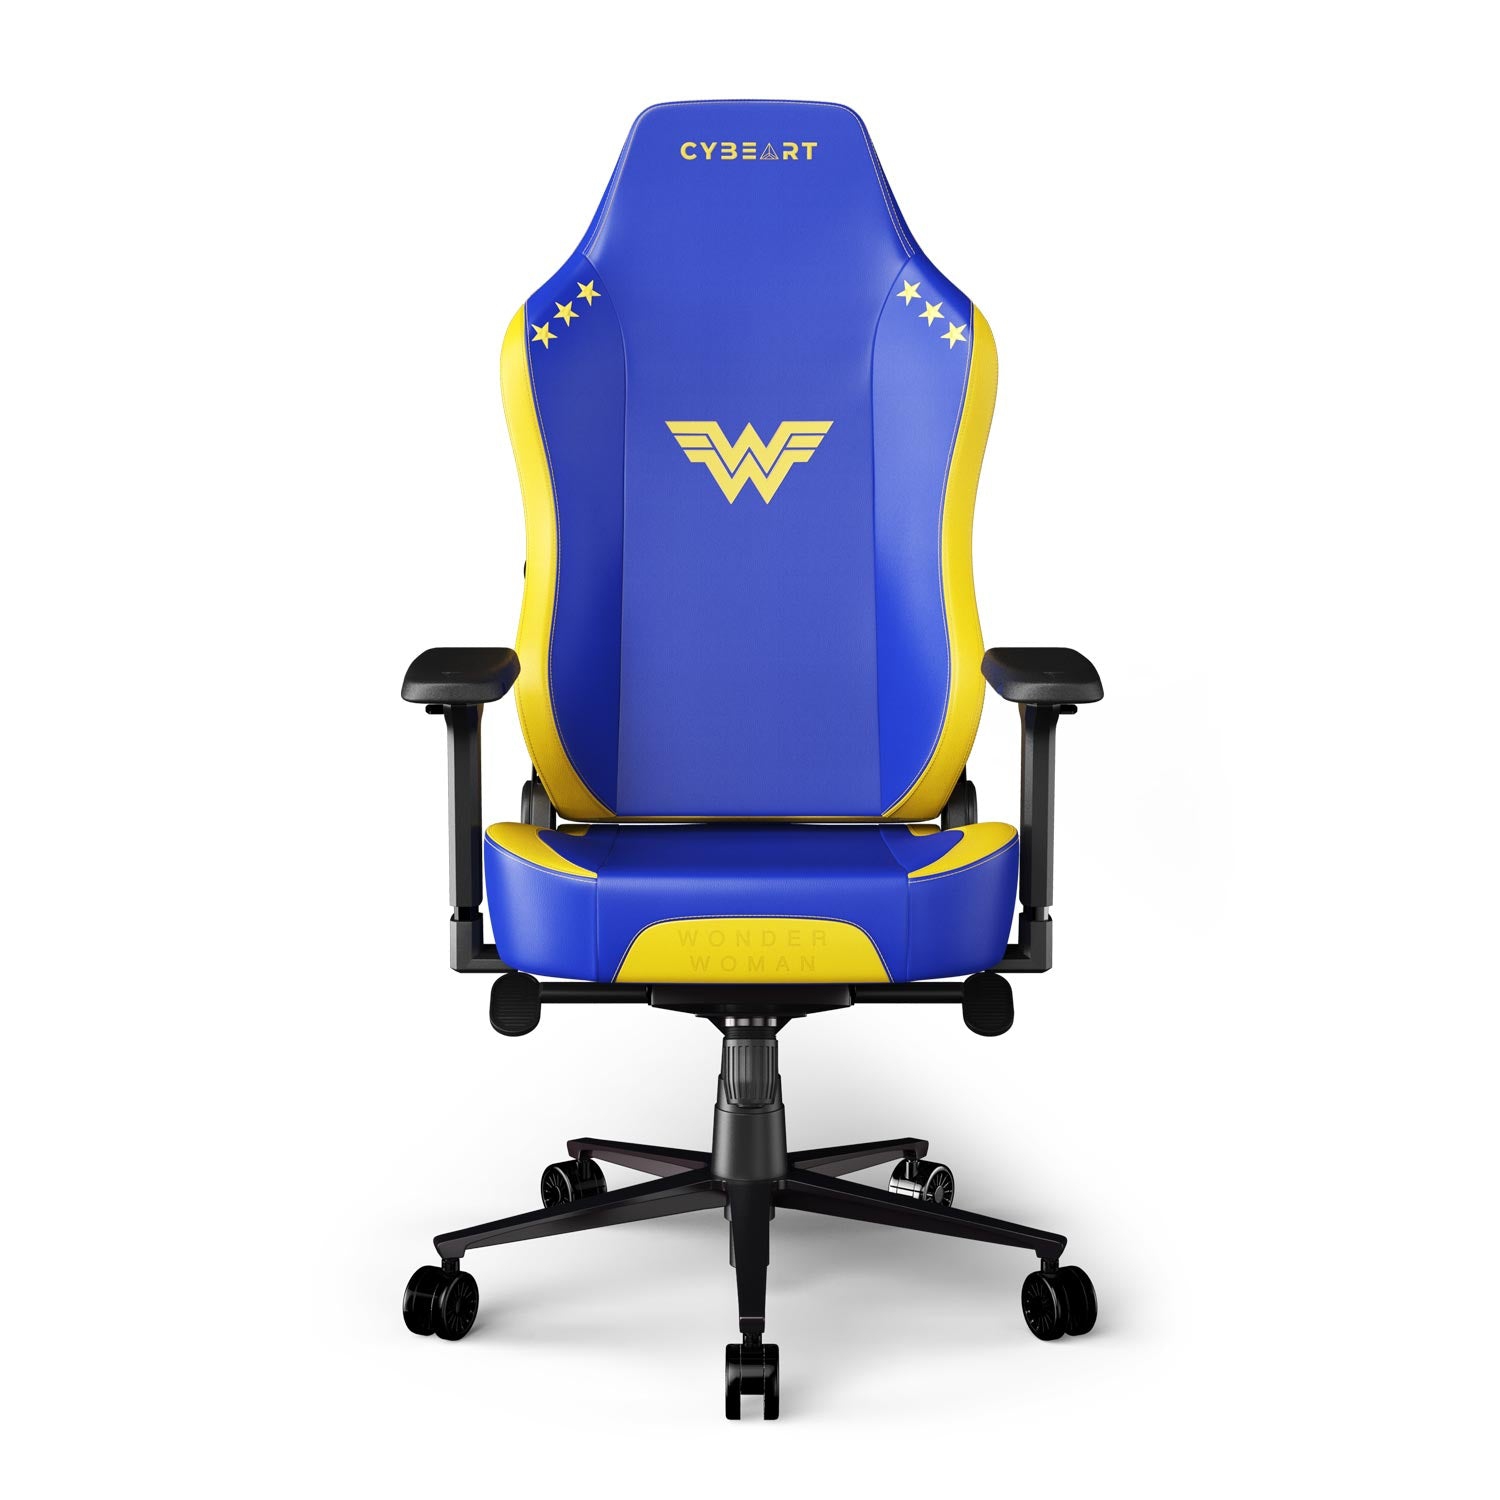 CYBEART | Wonder Woman Gaming/Office Chair - DC Comics | 4D Armrest | Inbuilt Lumbar Support | Supreme PU Leather, Ergonomic, Recline & Tilt